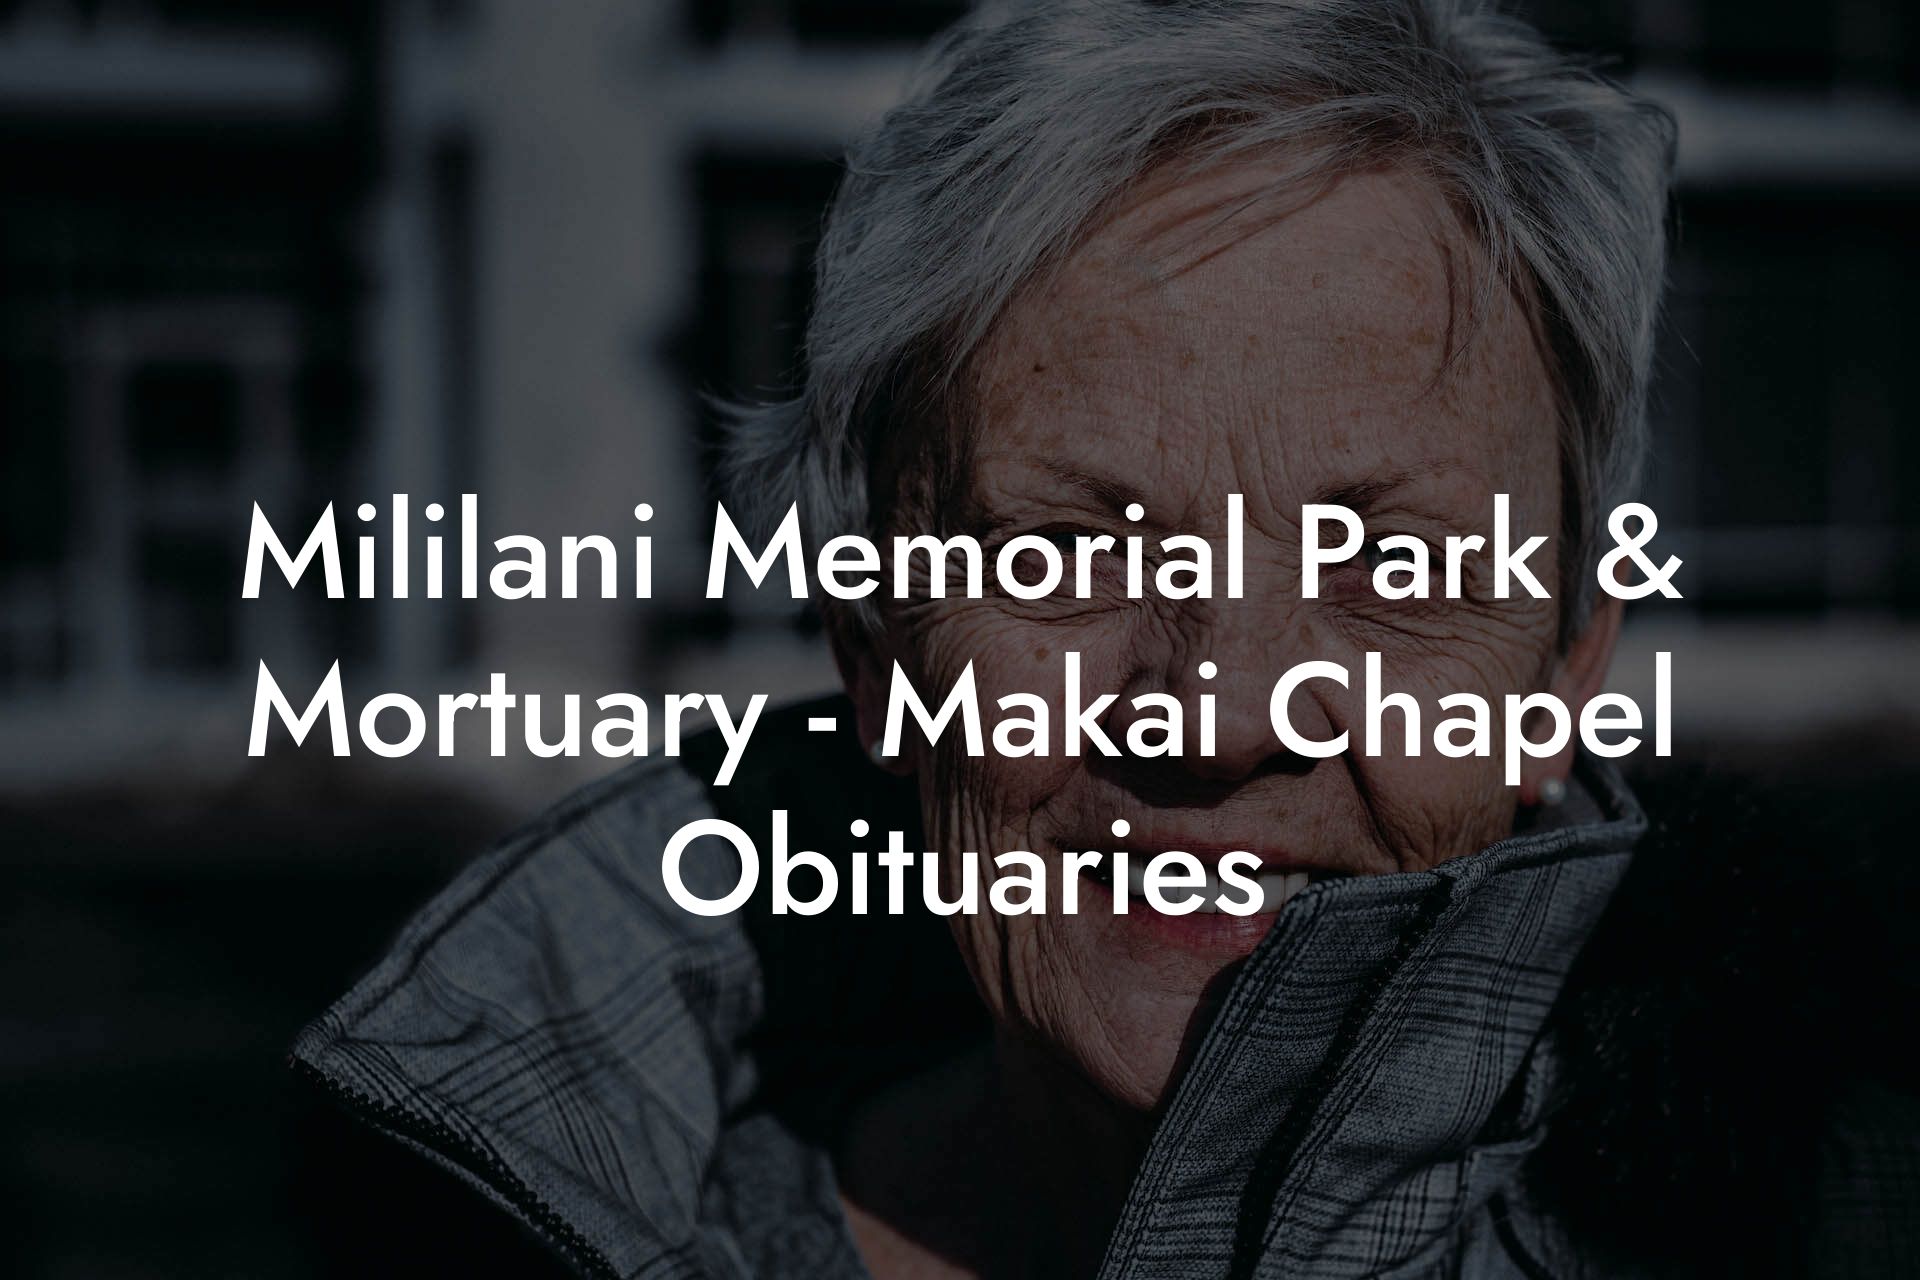 Mililani Memorial Park & Mortuary - Makai Chapel Obituaries